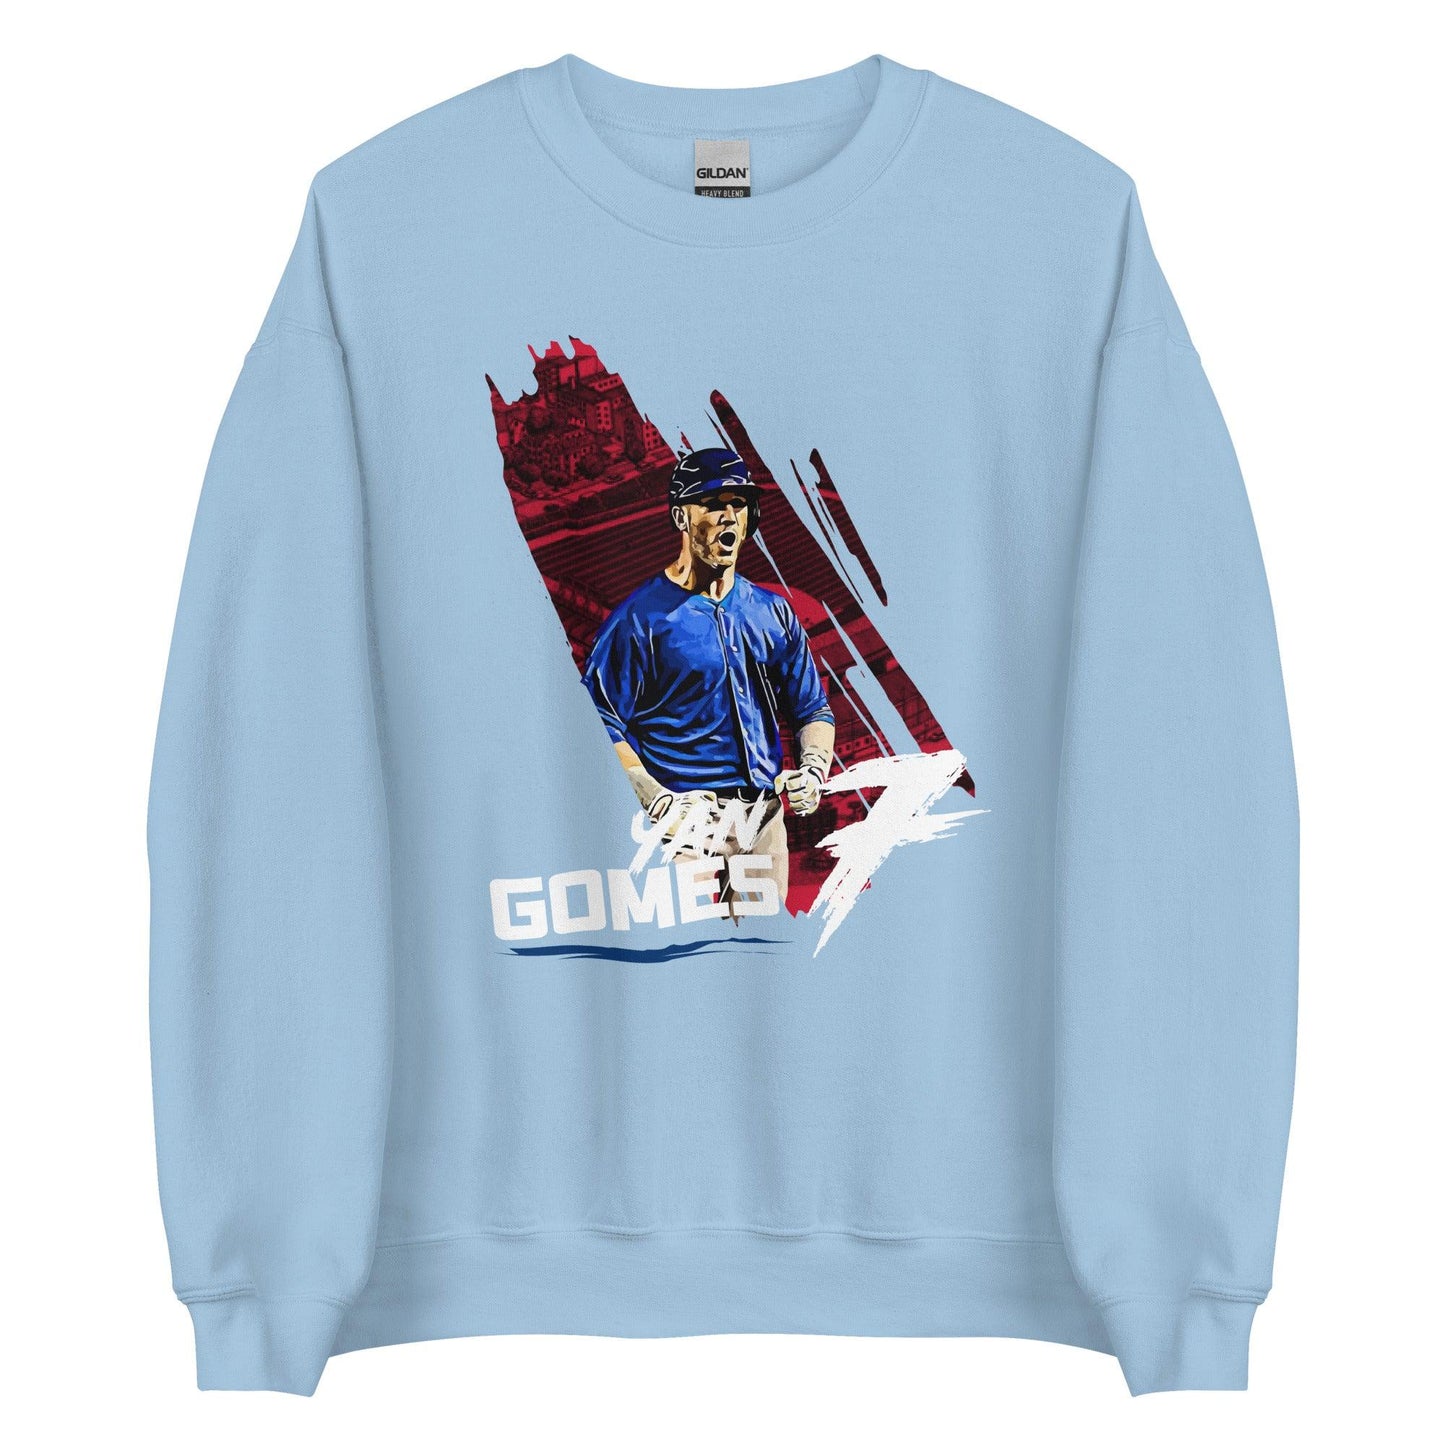 Yan Gomes "Gametime" Sweatshirt - Fan Arch